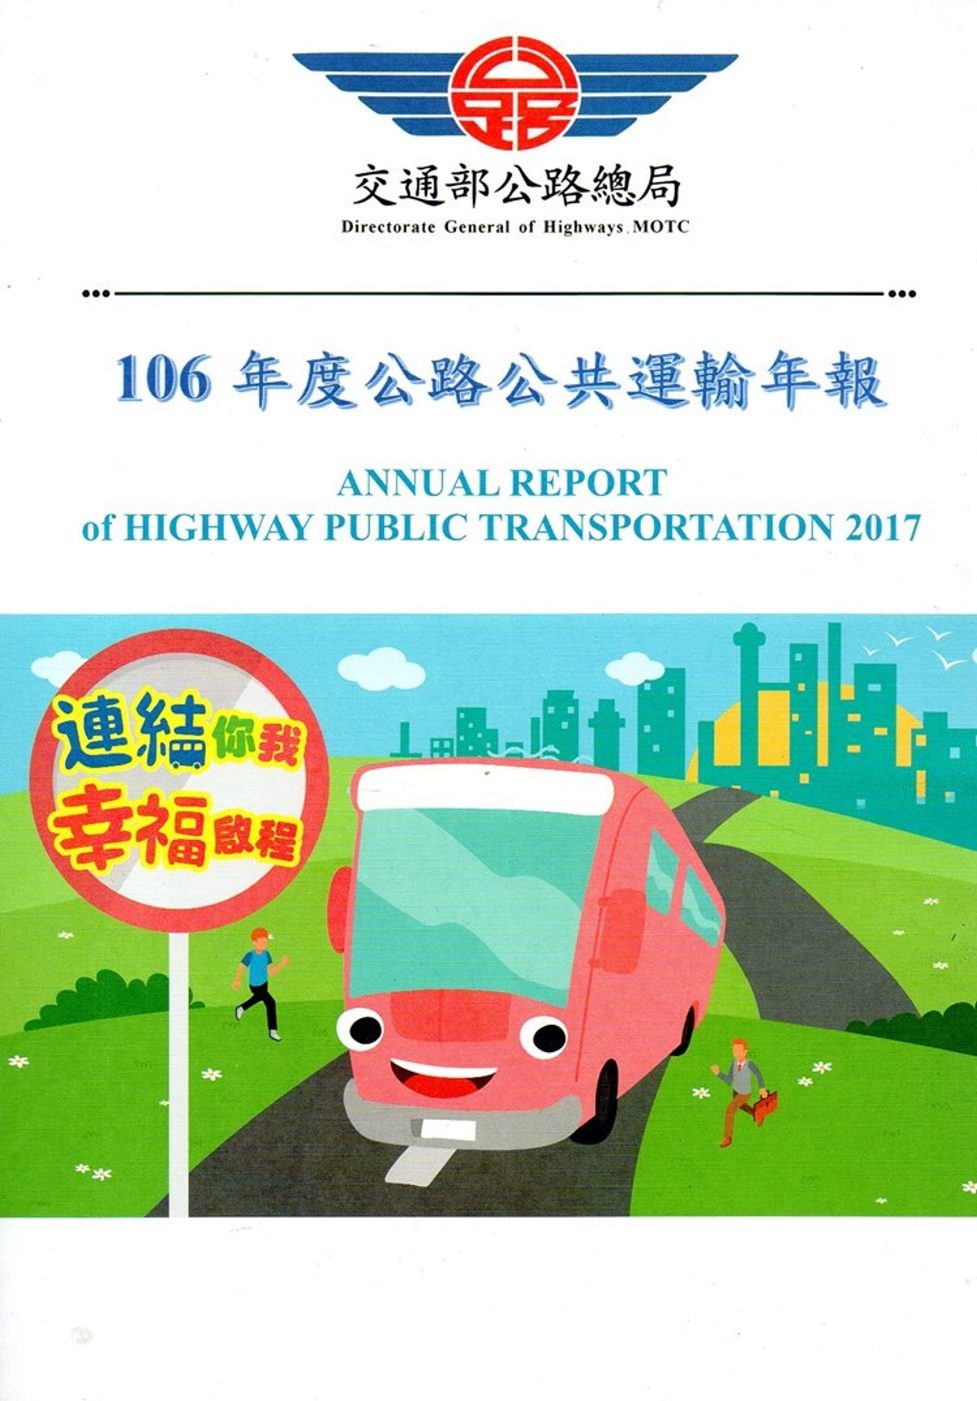 106年度公路公共運輸年報